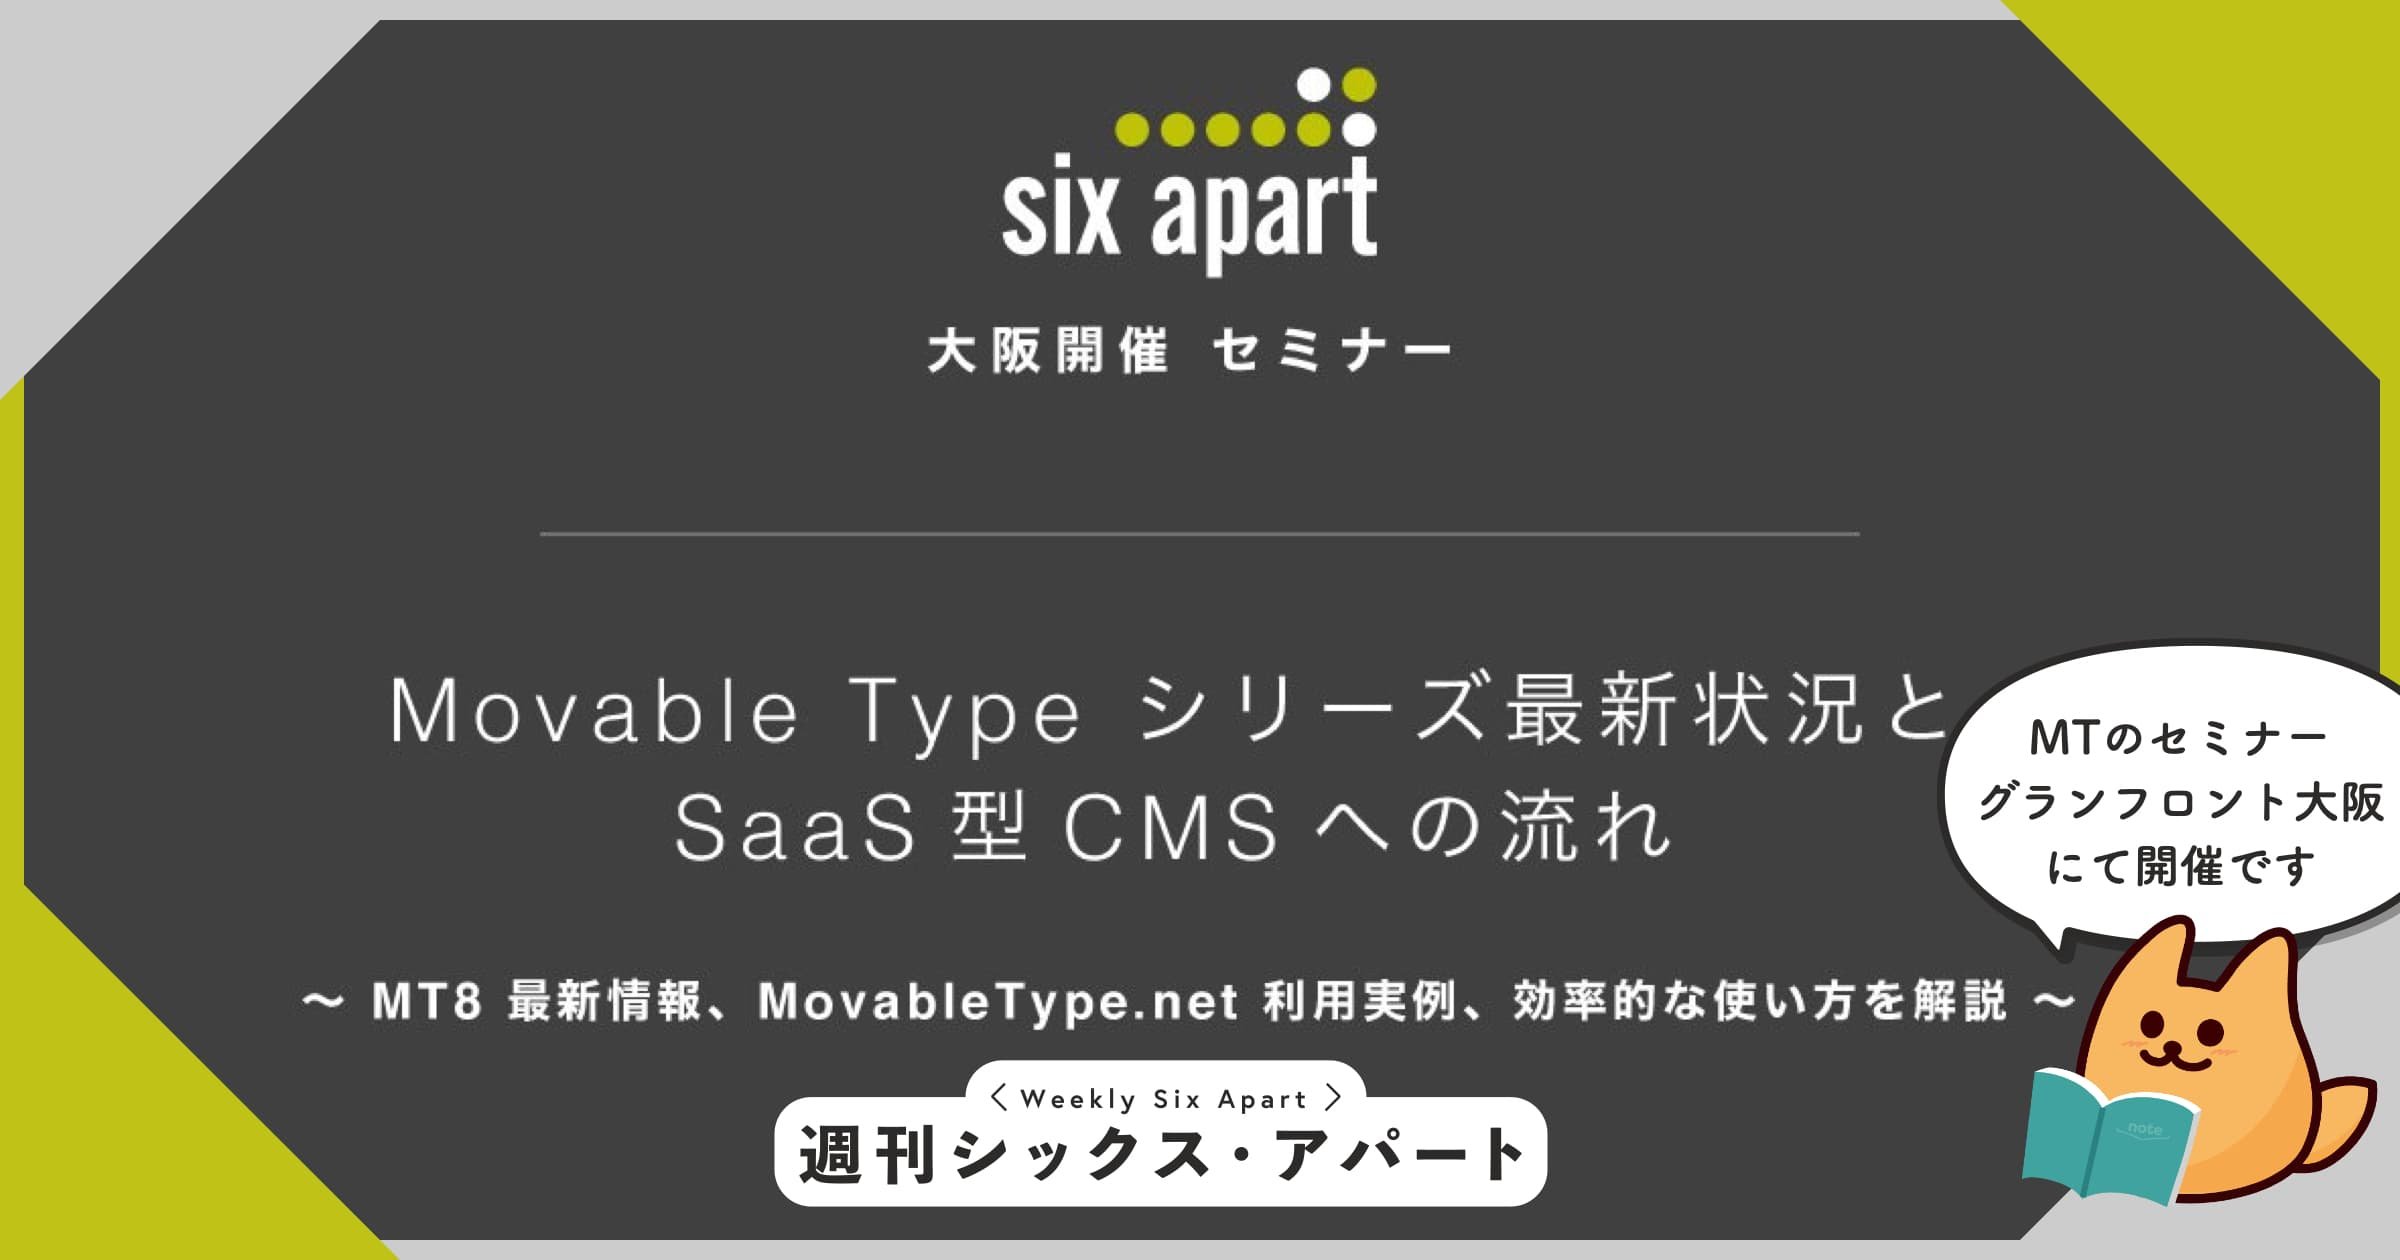 7月24日水、グランフロント大阪にて Movable Type の最新状況を紹介するビジネスセミナーを開催します #週刊SA 